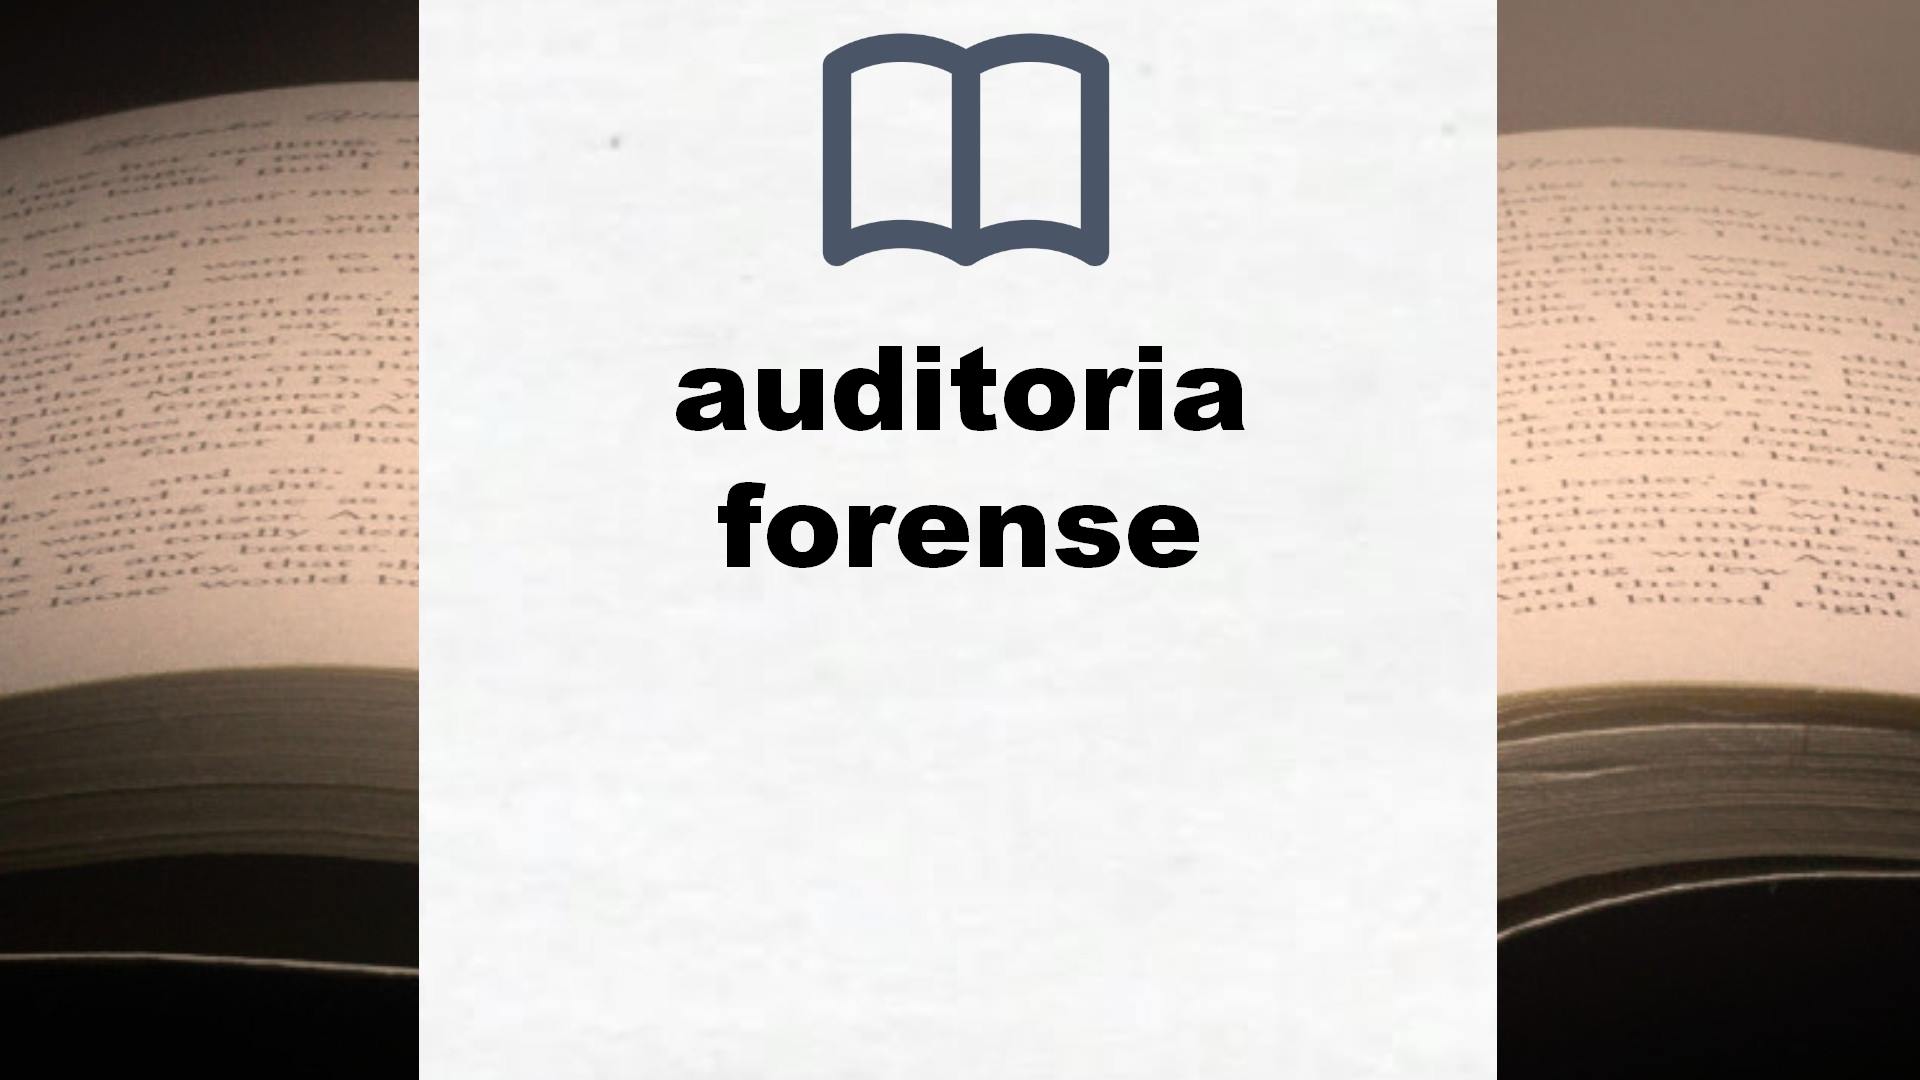 Libros sobre auditoria forense